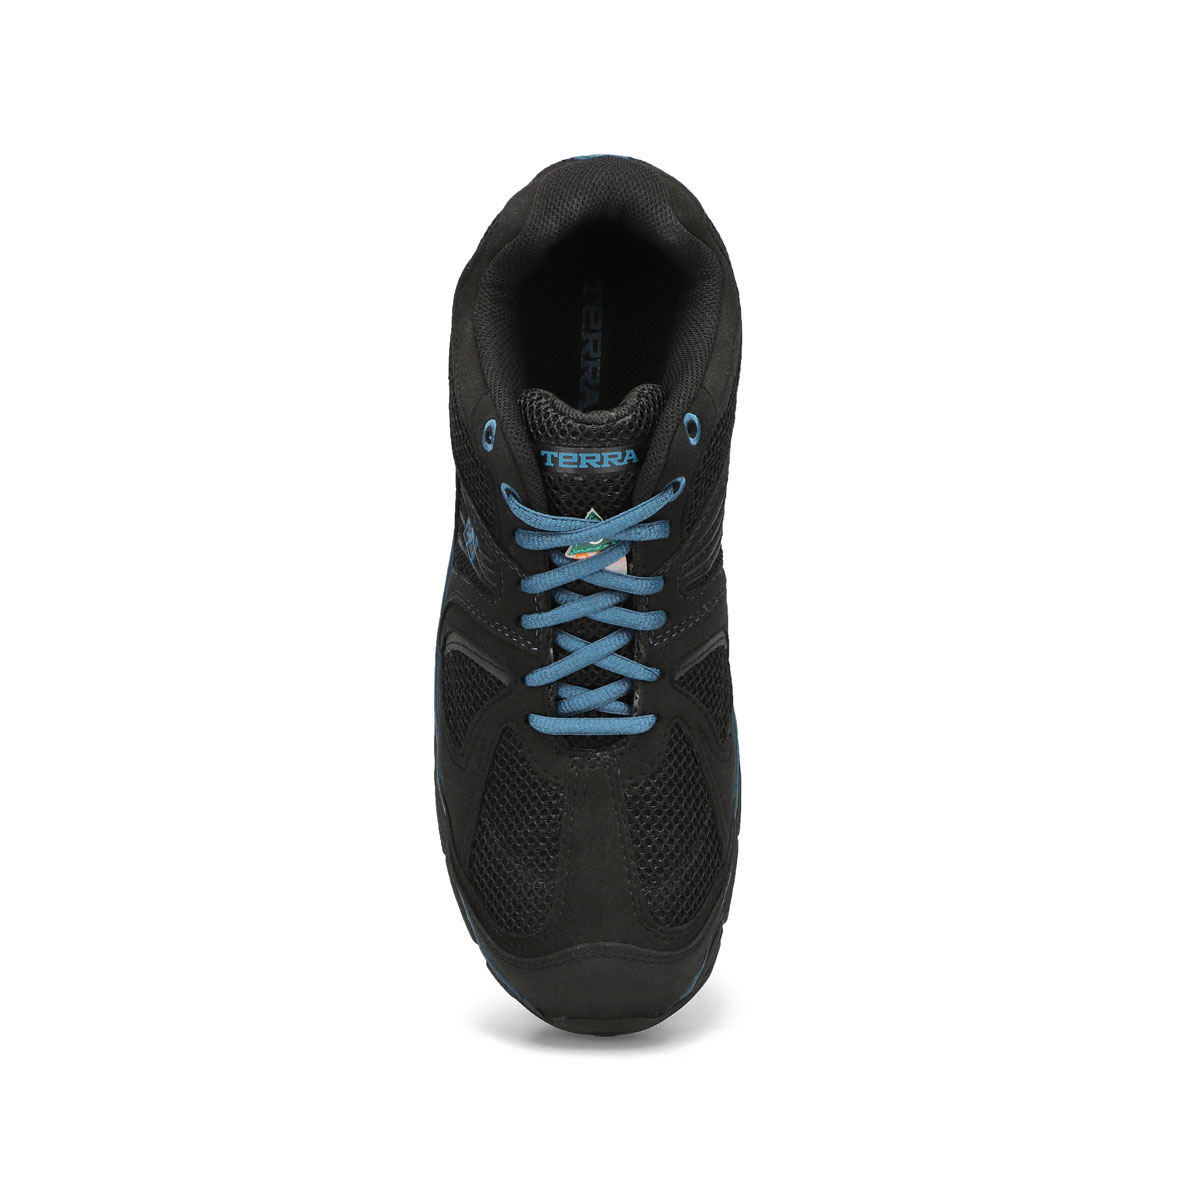 Men's Pacer 2 CSA Sneaker - Black/Blue